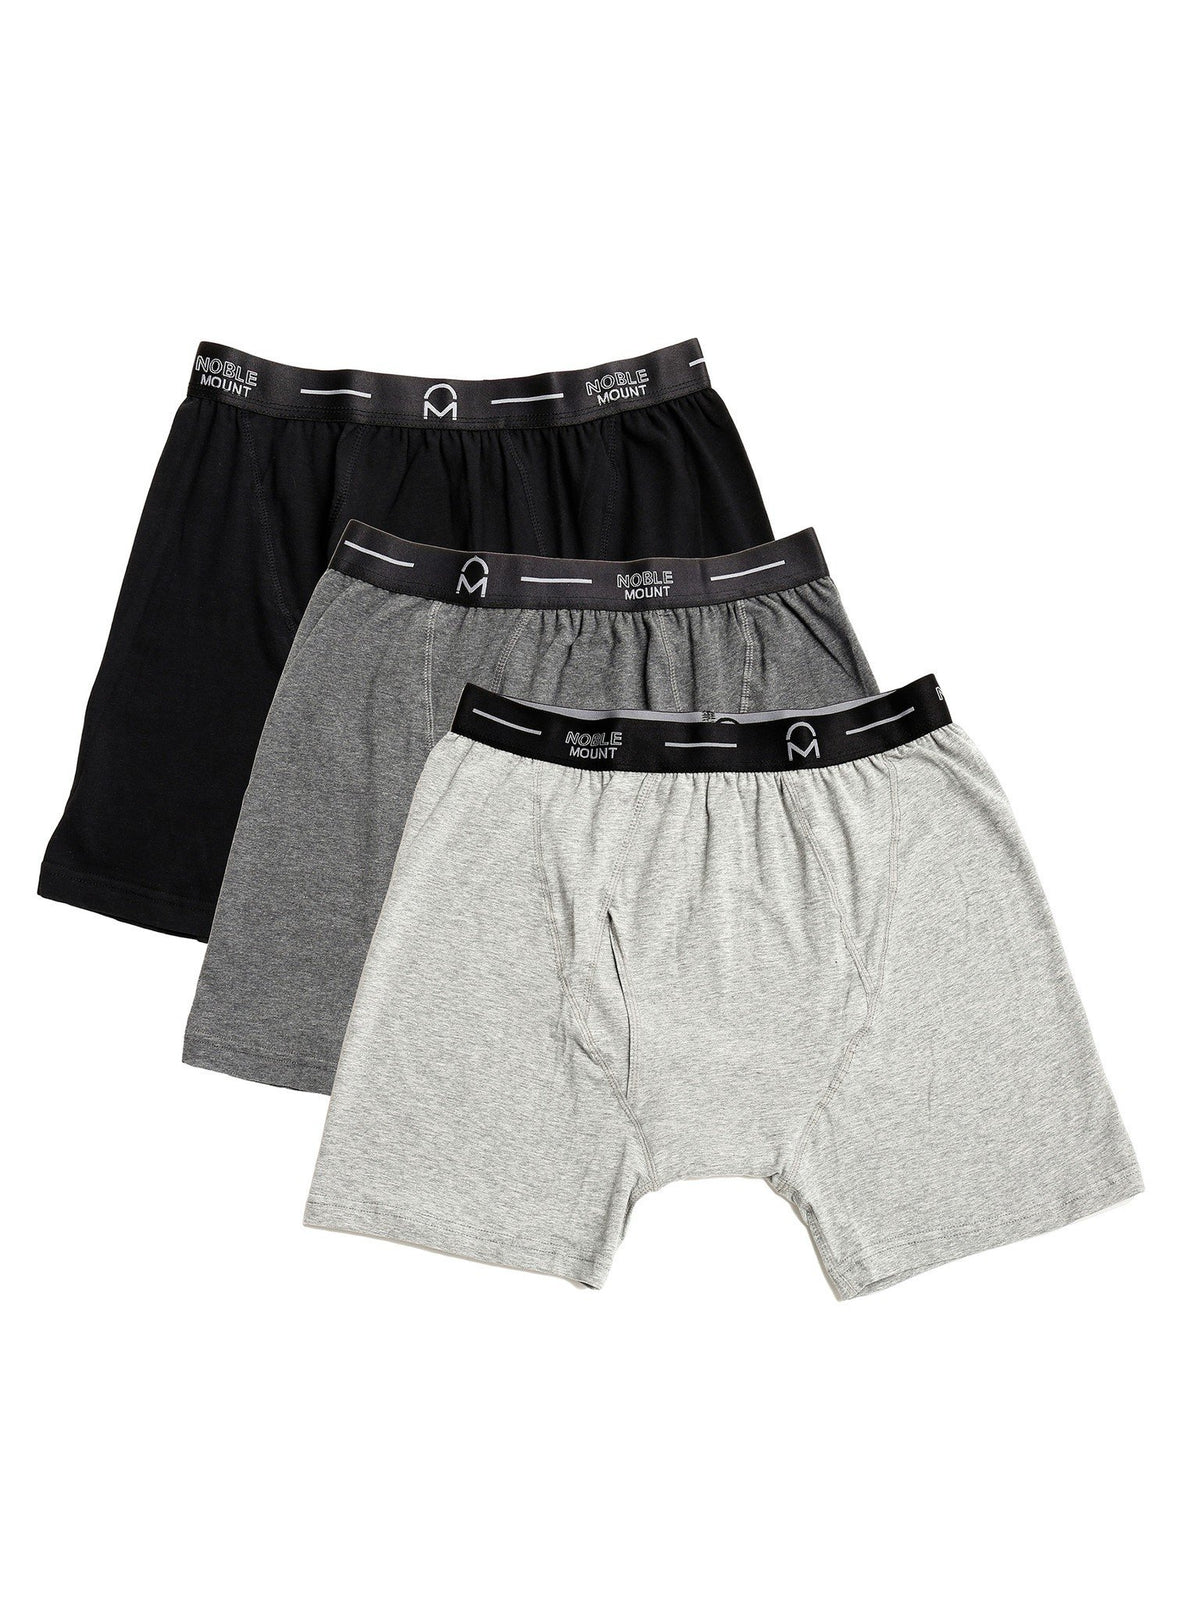 Men's Stretch Cotton Knit Boxer Briefs 3-Pack - Set 1 - Black/Grey/Charcoal